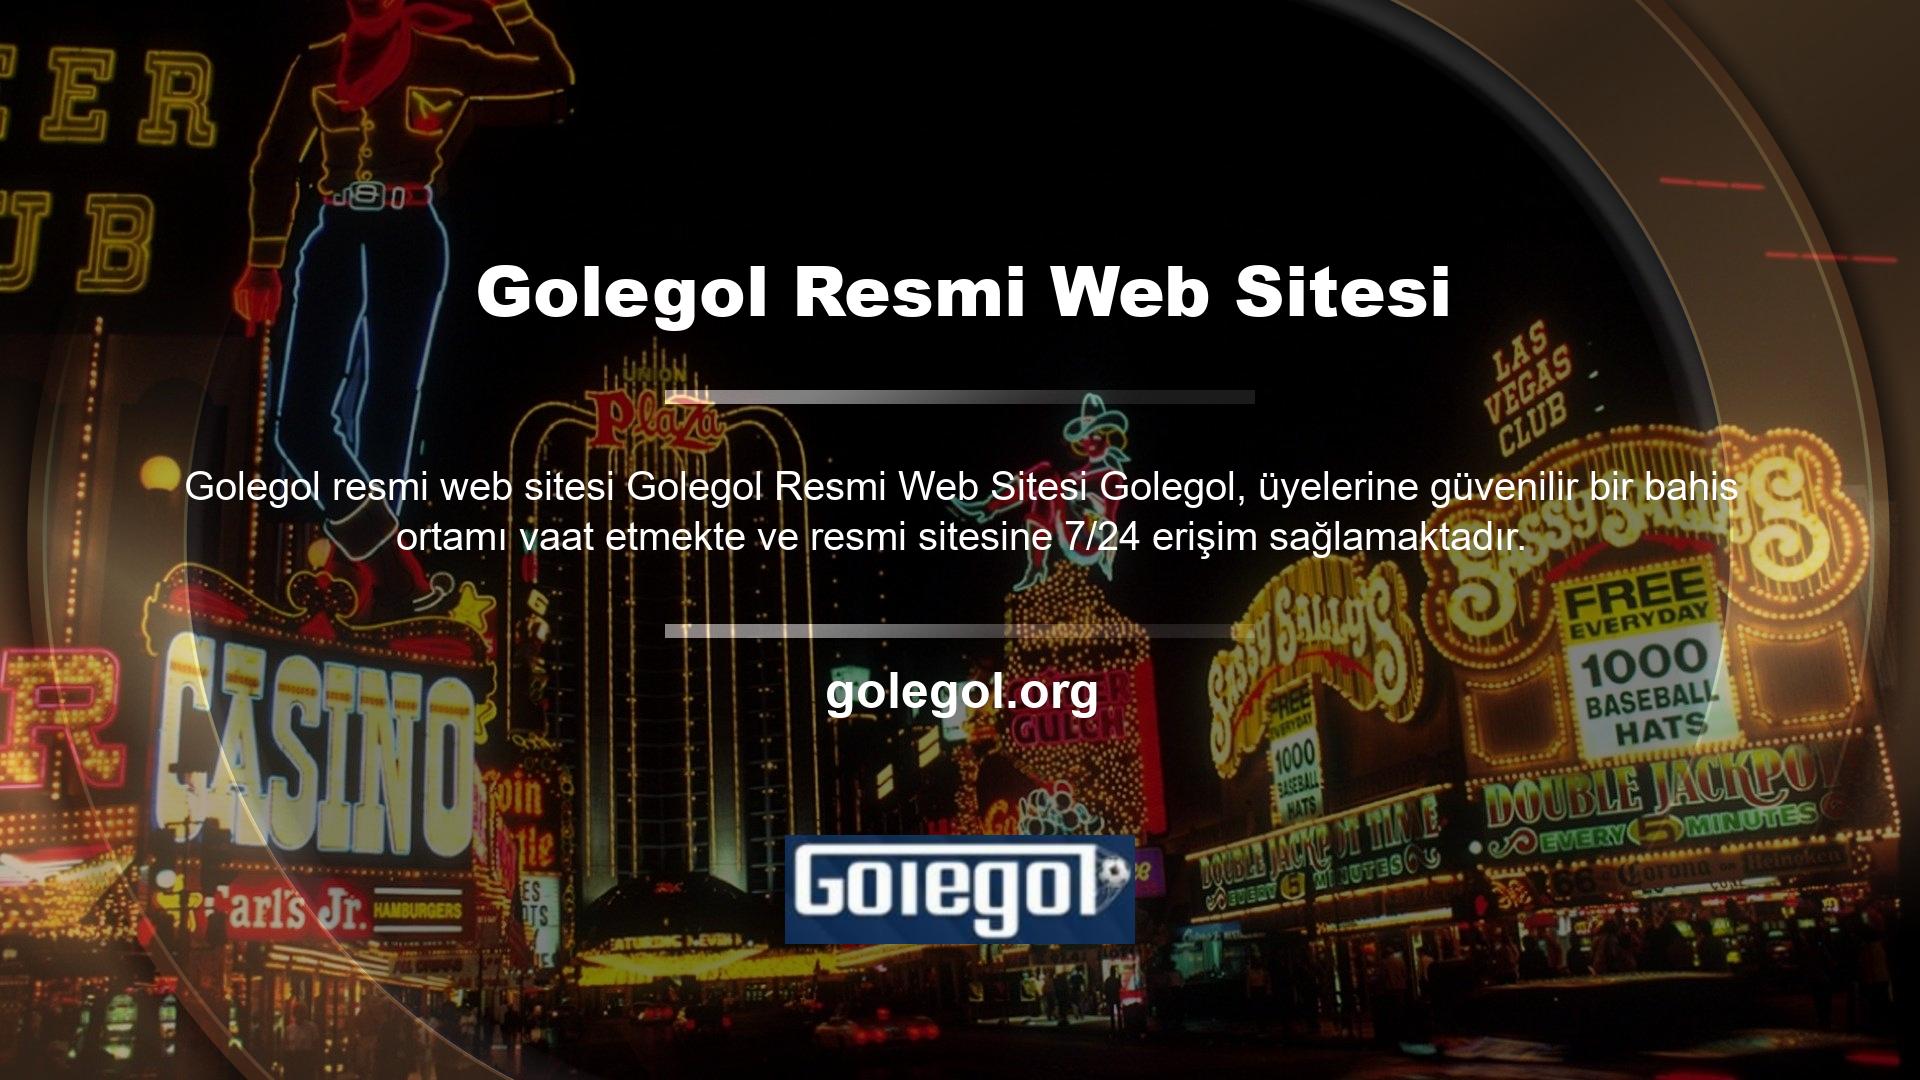 Golegol resmi sitesinde yer alan verilere erişilirken sitenin sosyal medya hesapları kullanılabilir